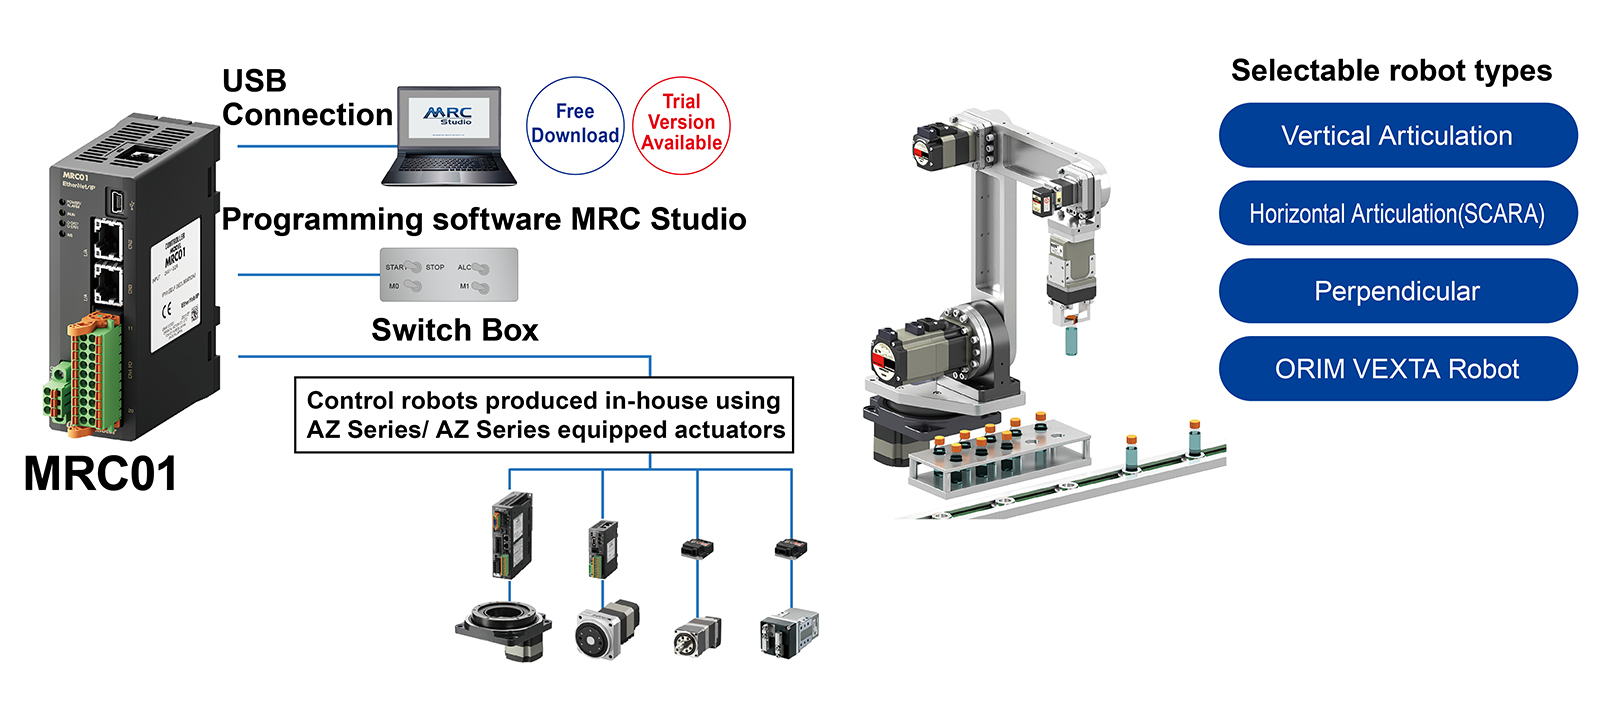 ไดอะแกรมการเชื่อมต่อตัวควบคุมหุ่นยนต์ MRC01 และประเภทหุ่นยนต์ที่เลือกได้ (ประเภทประกบแนวตั้ง | ประเภทประกบแนวนอน (สกาล่า) | ประเภทโครงสำหรับตั้งสิ่งของ | หุ่นยนต์ ORIM VEXTA)